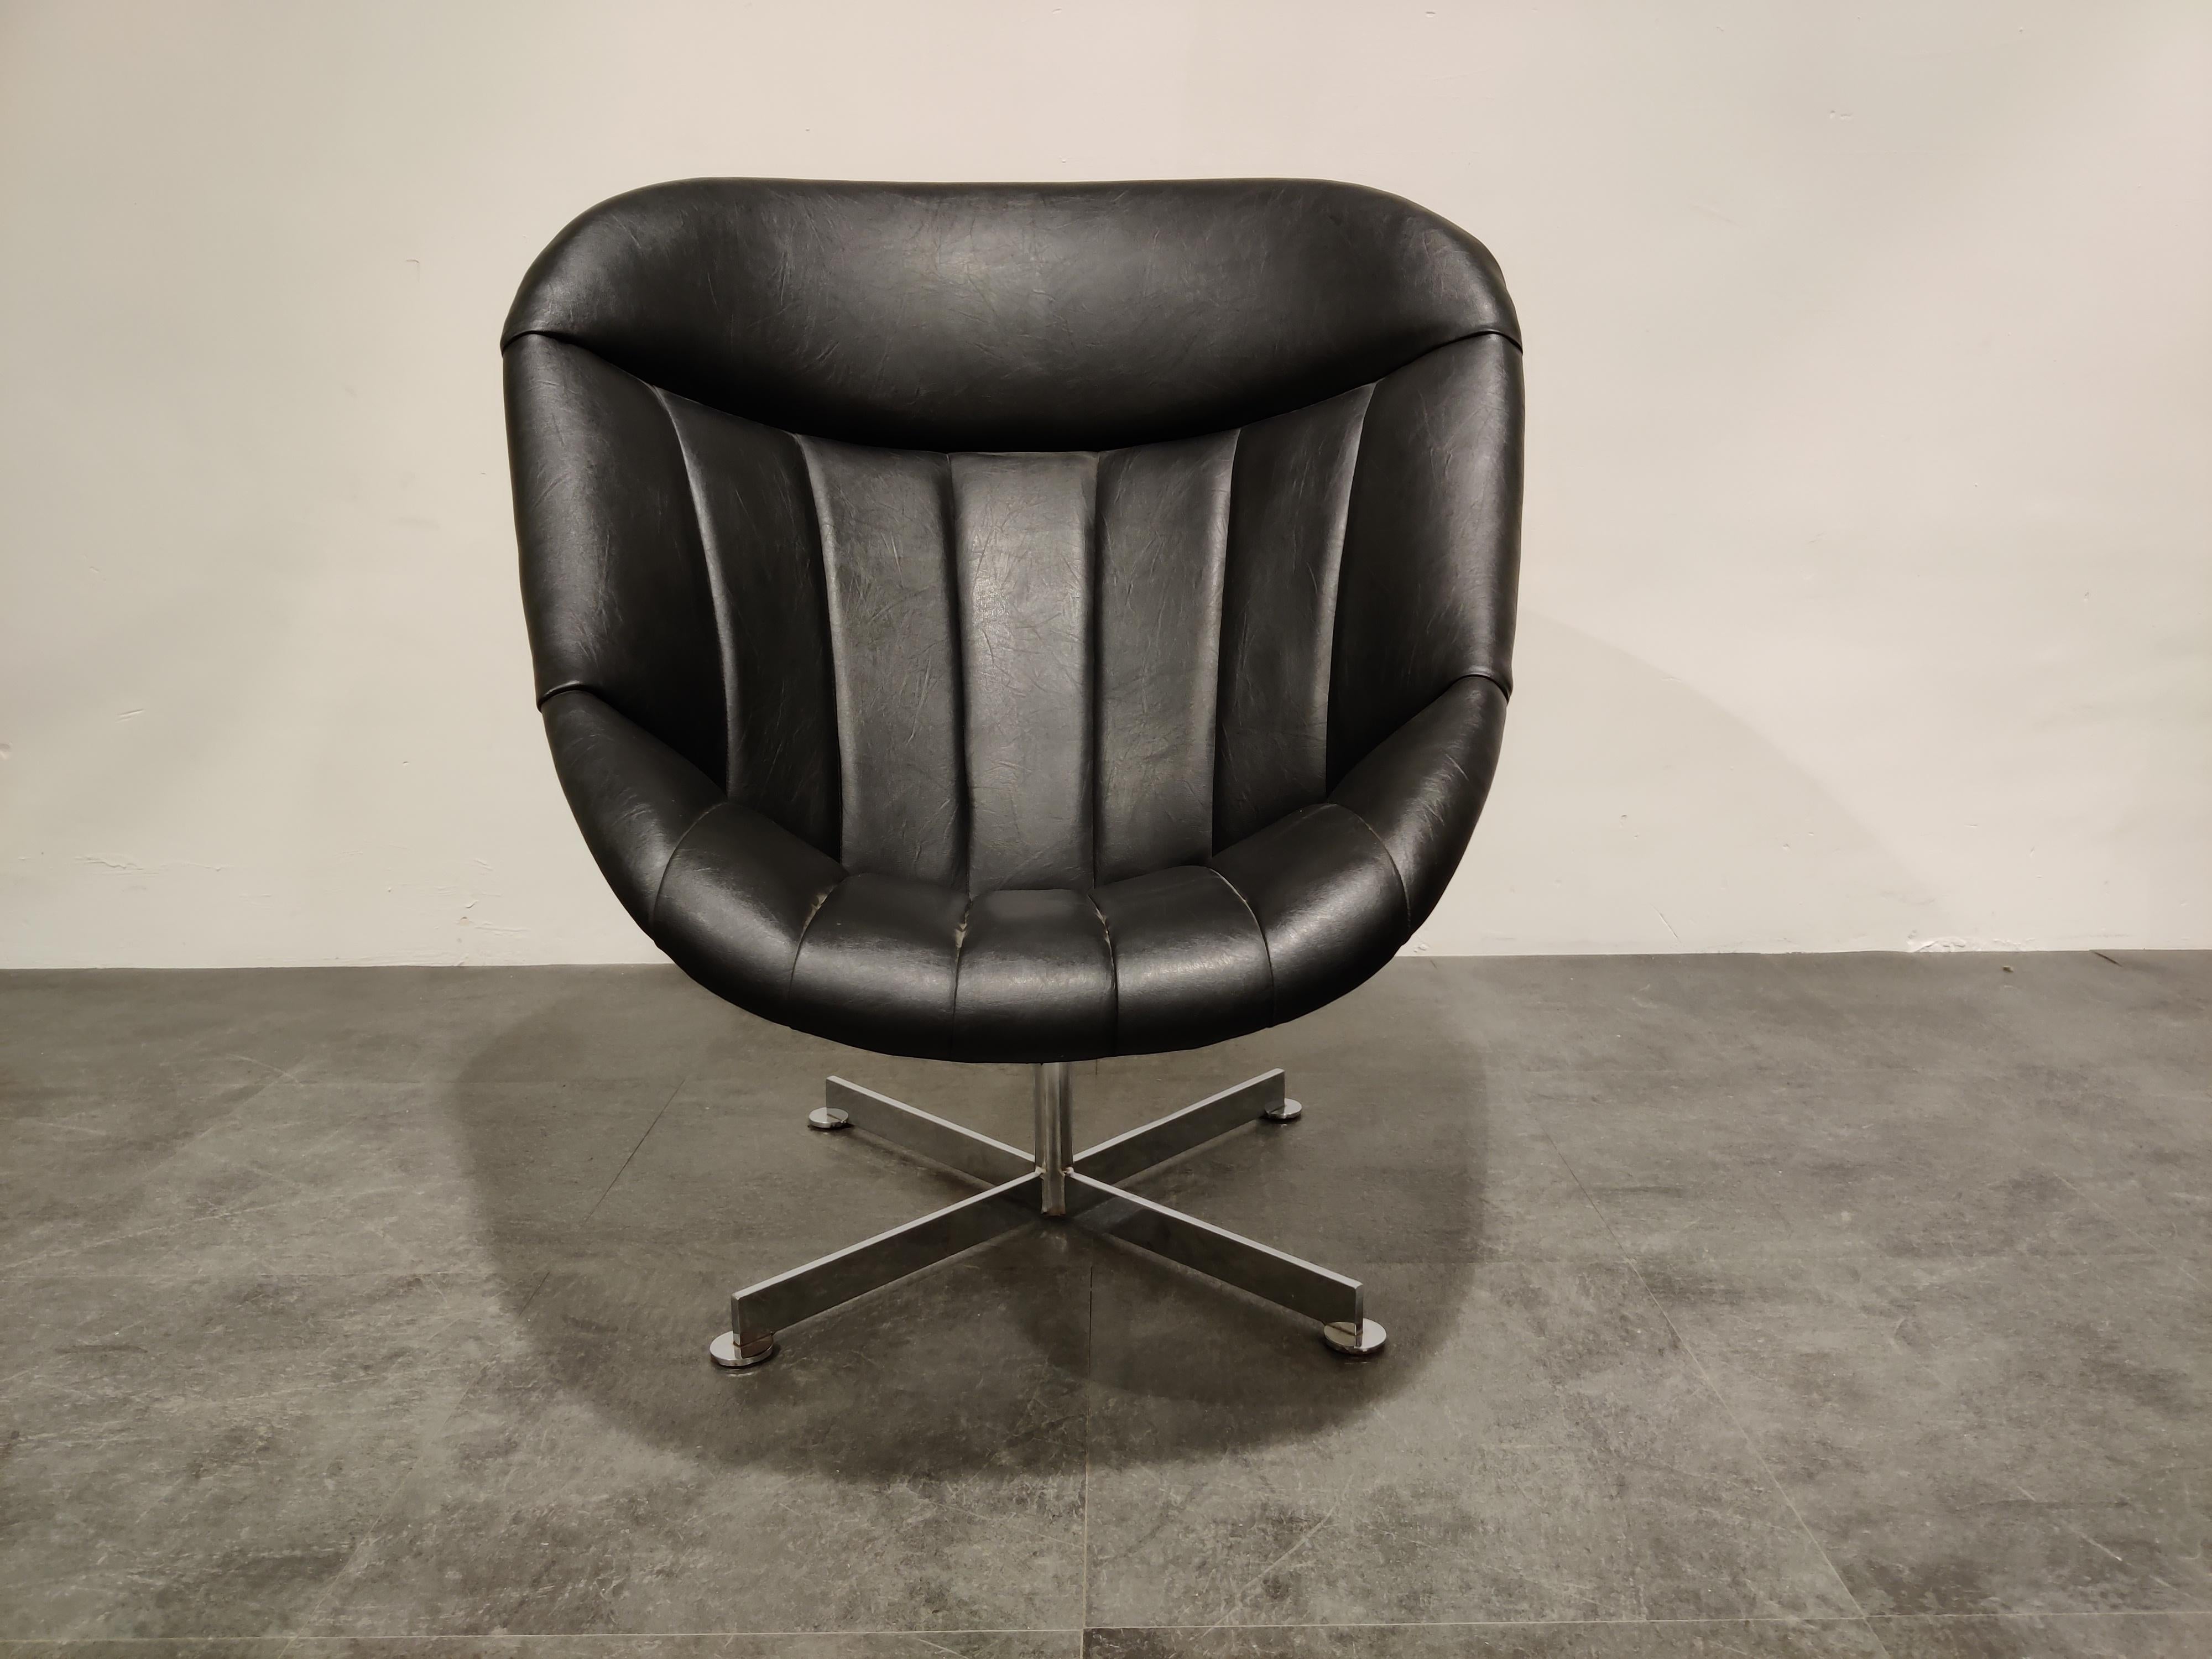 Schwarzer Skai-Sessel mit hoher Rückenlehne und verchromtem Fuß, entworfen von Rudolf Wolf für Rohé Noordwolde.

Seltener Stuhl mit einem schönen Design, der auch sehr bequem ist.

Guter Zustand

1960er Jahre,